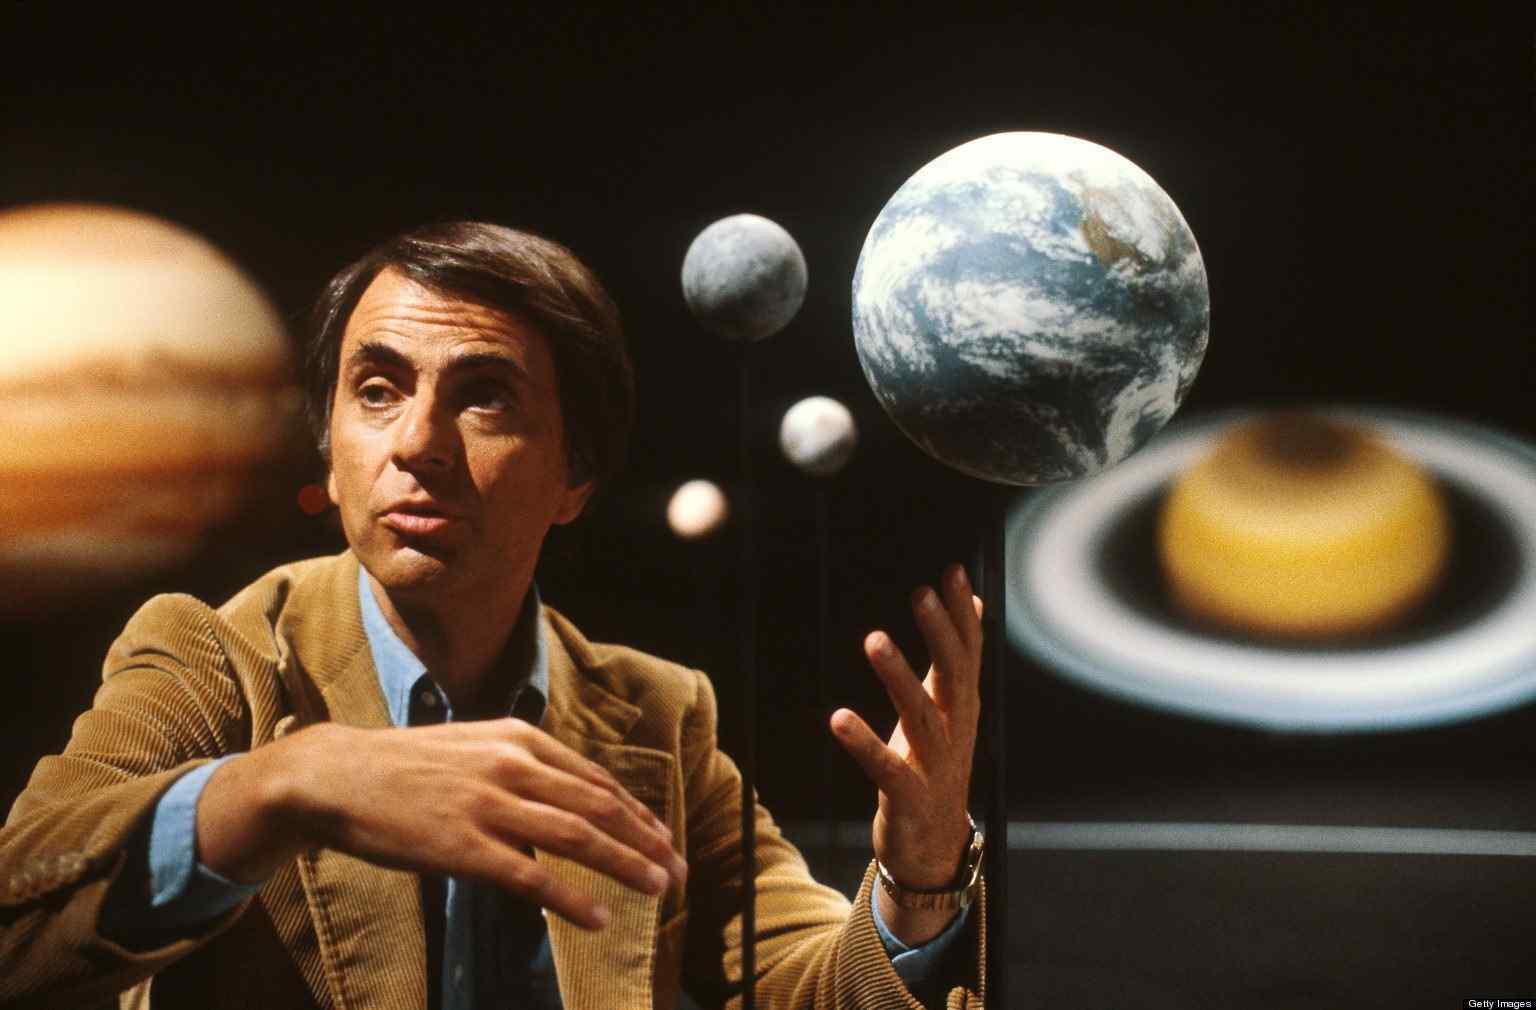 Carl Sagan in Cosmos: A Personal Voyage